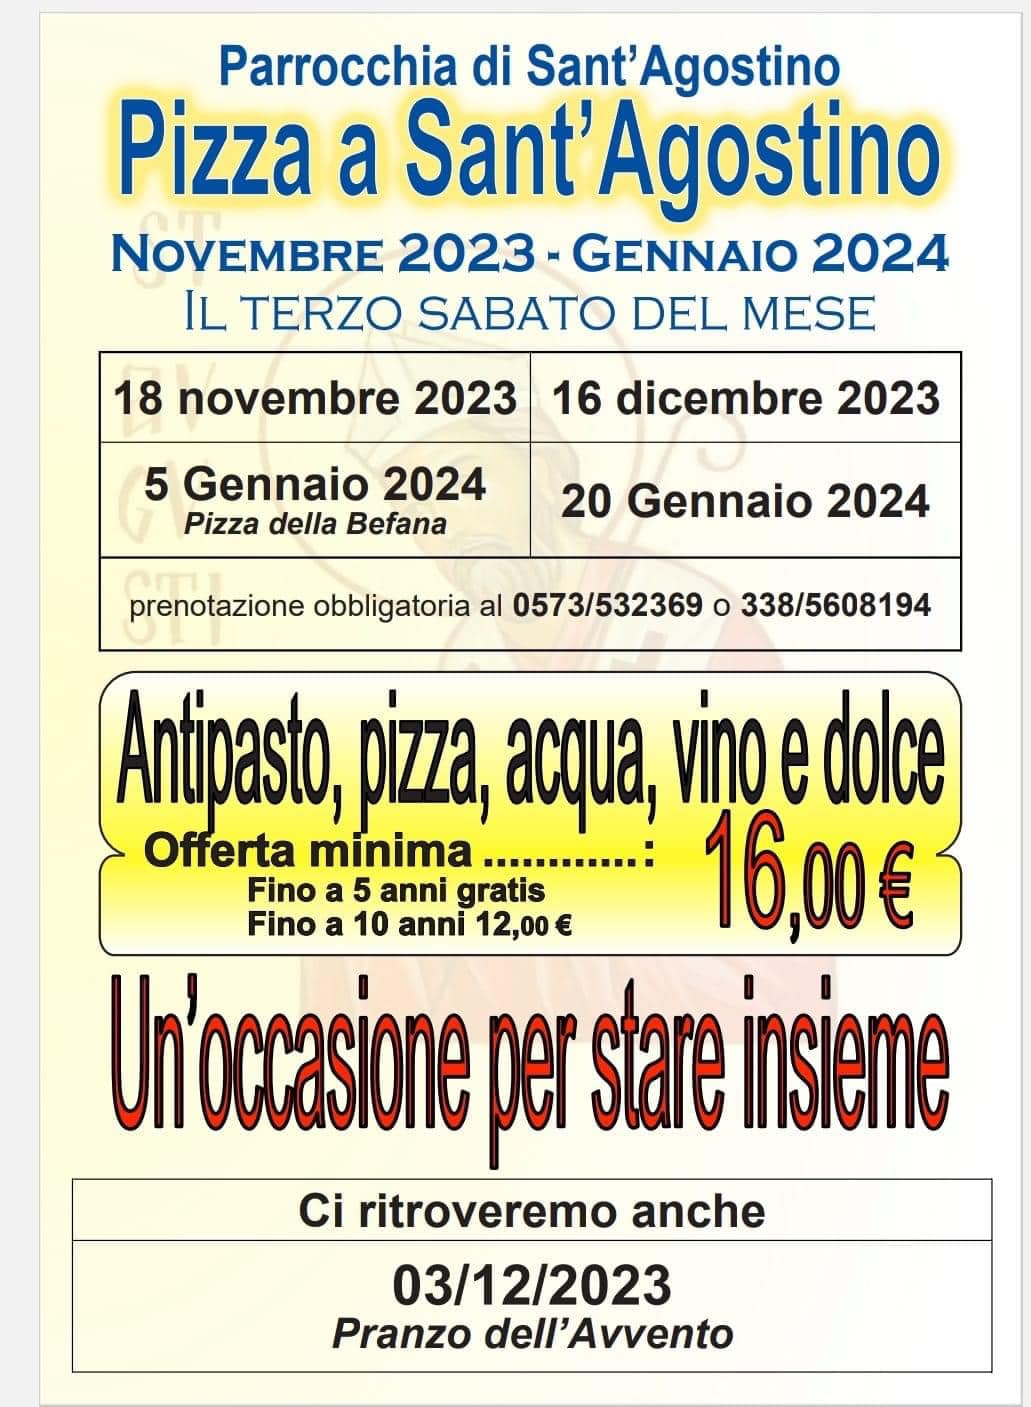 Pizza a Sant'Agostino